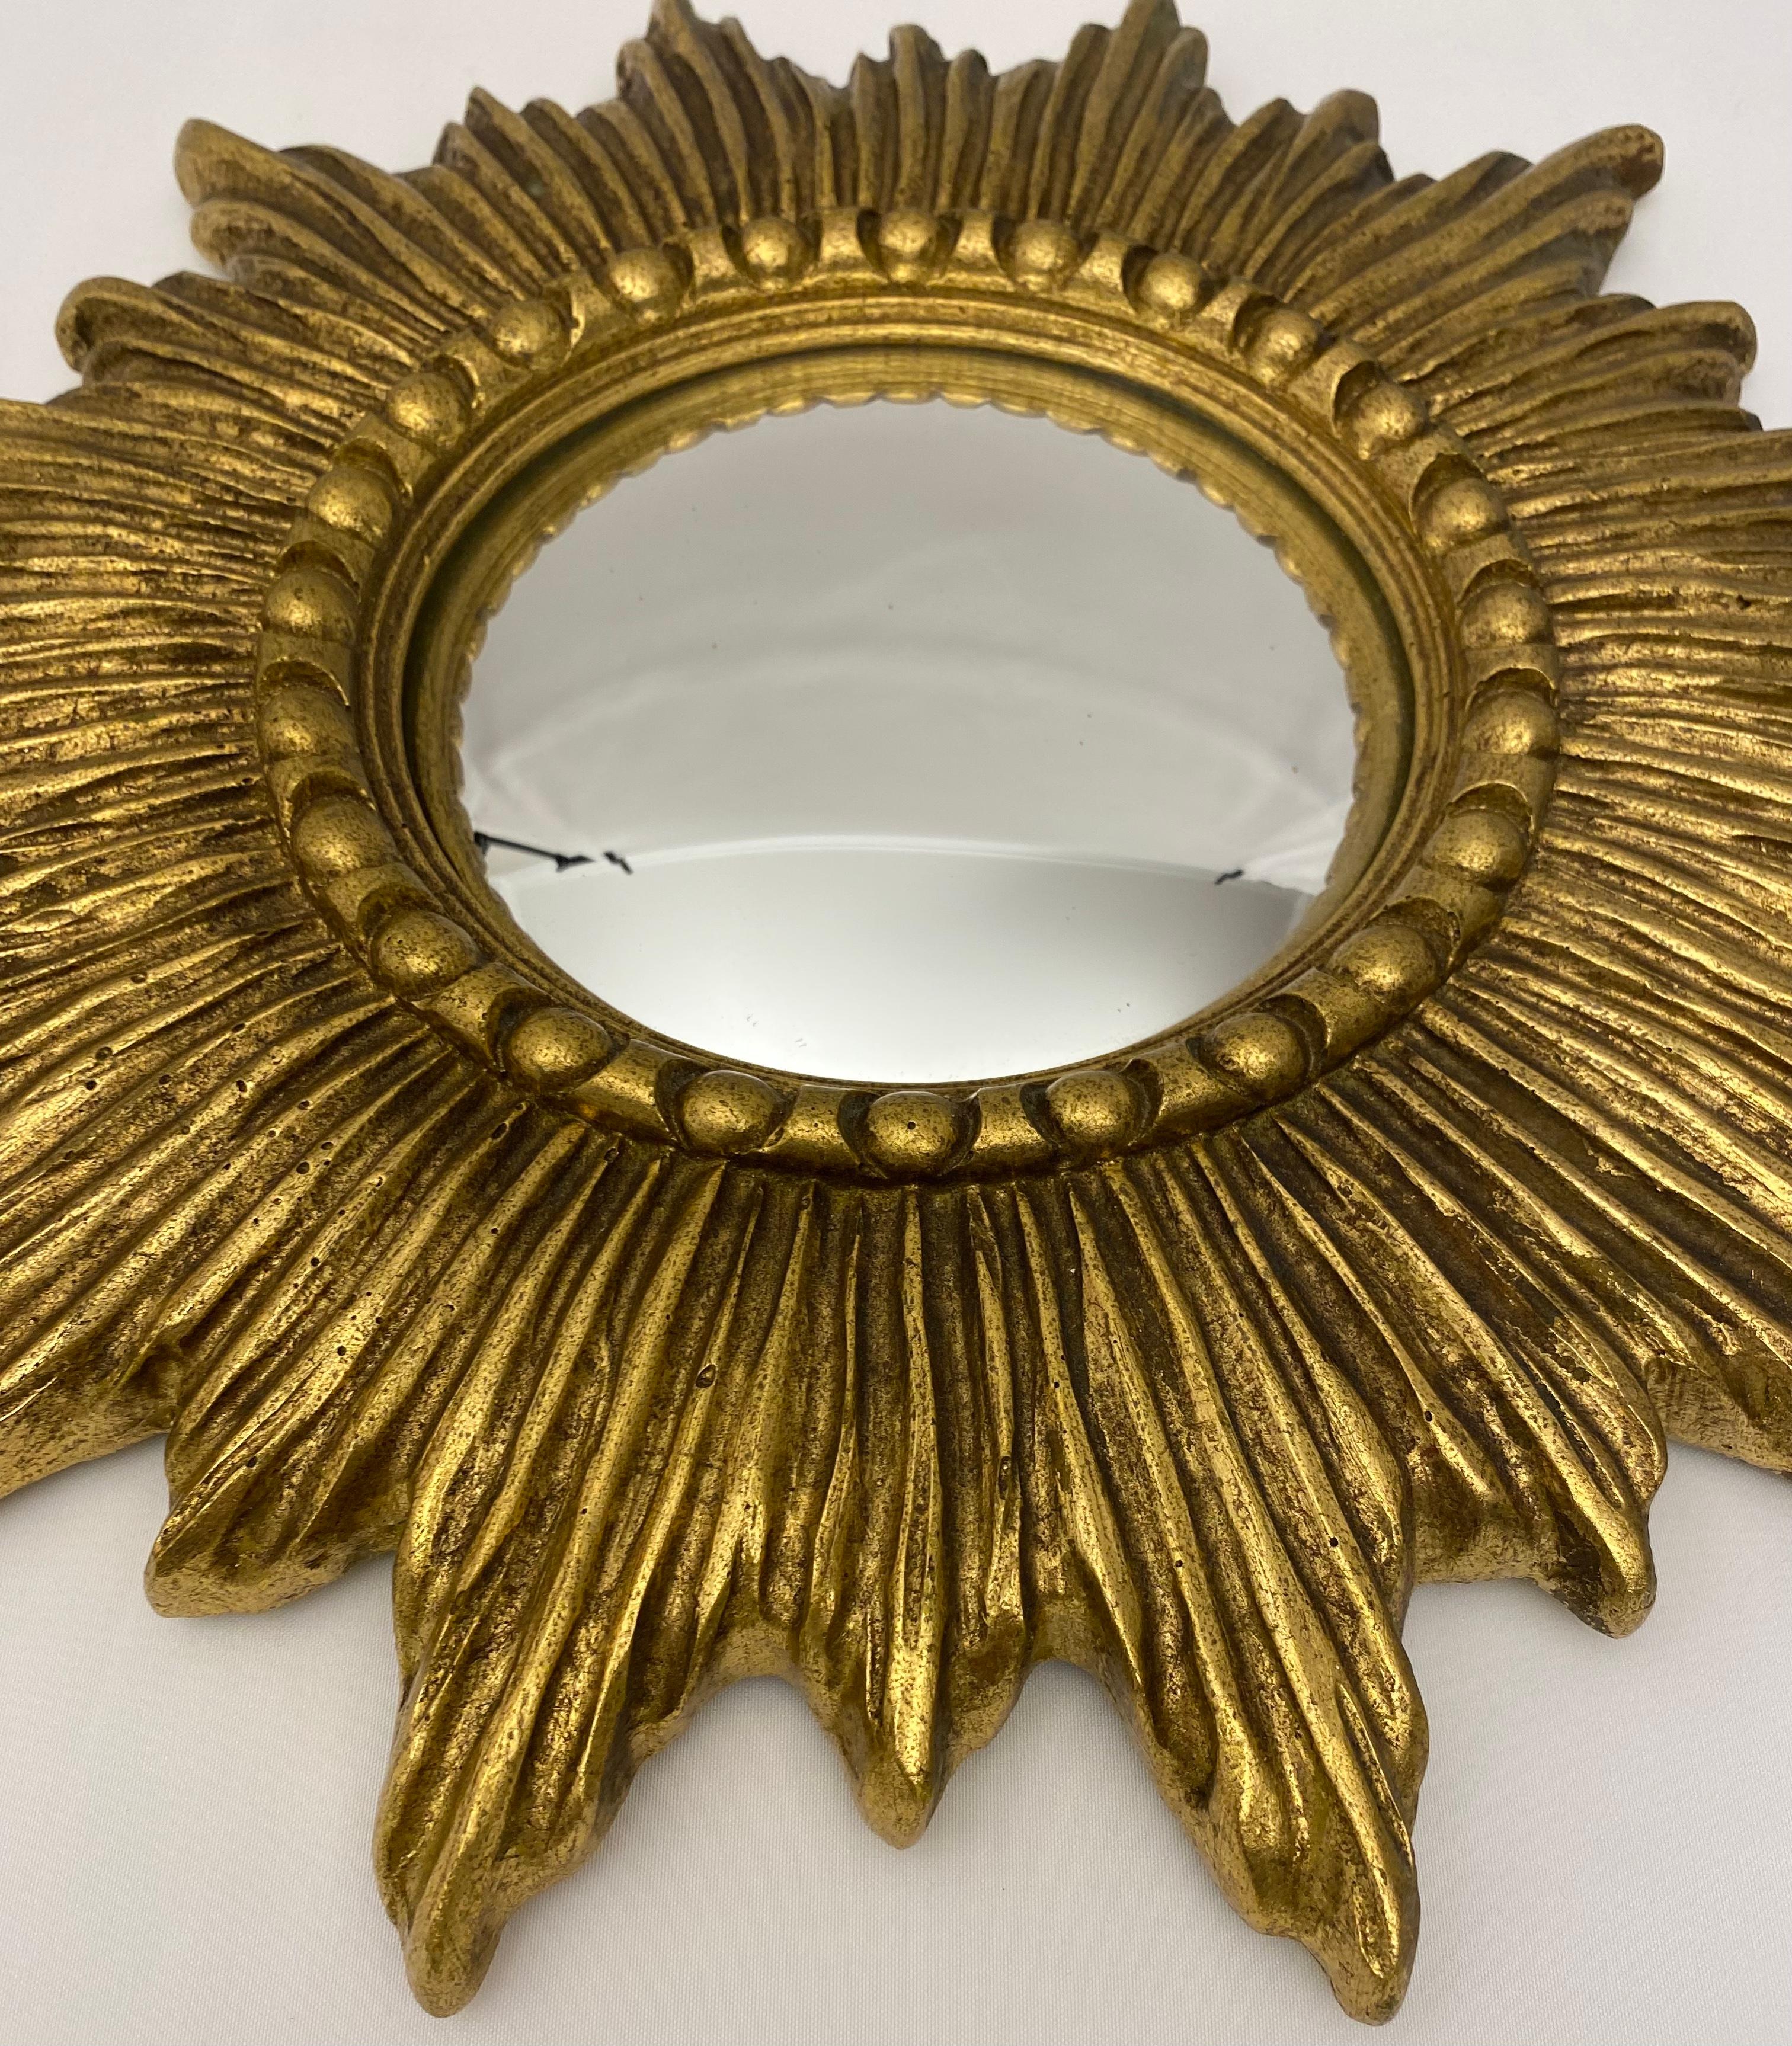 Un beau miroir français doré en forme de soleil ou d'étoile avec un centre en verre convexe dans un cadre en bois moulé.

Mesures : Diamètre 14 pouces x 1 1/8